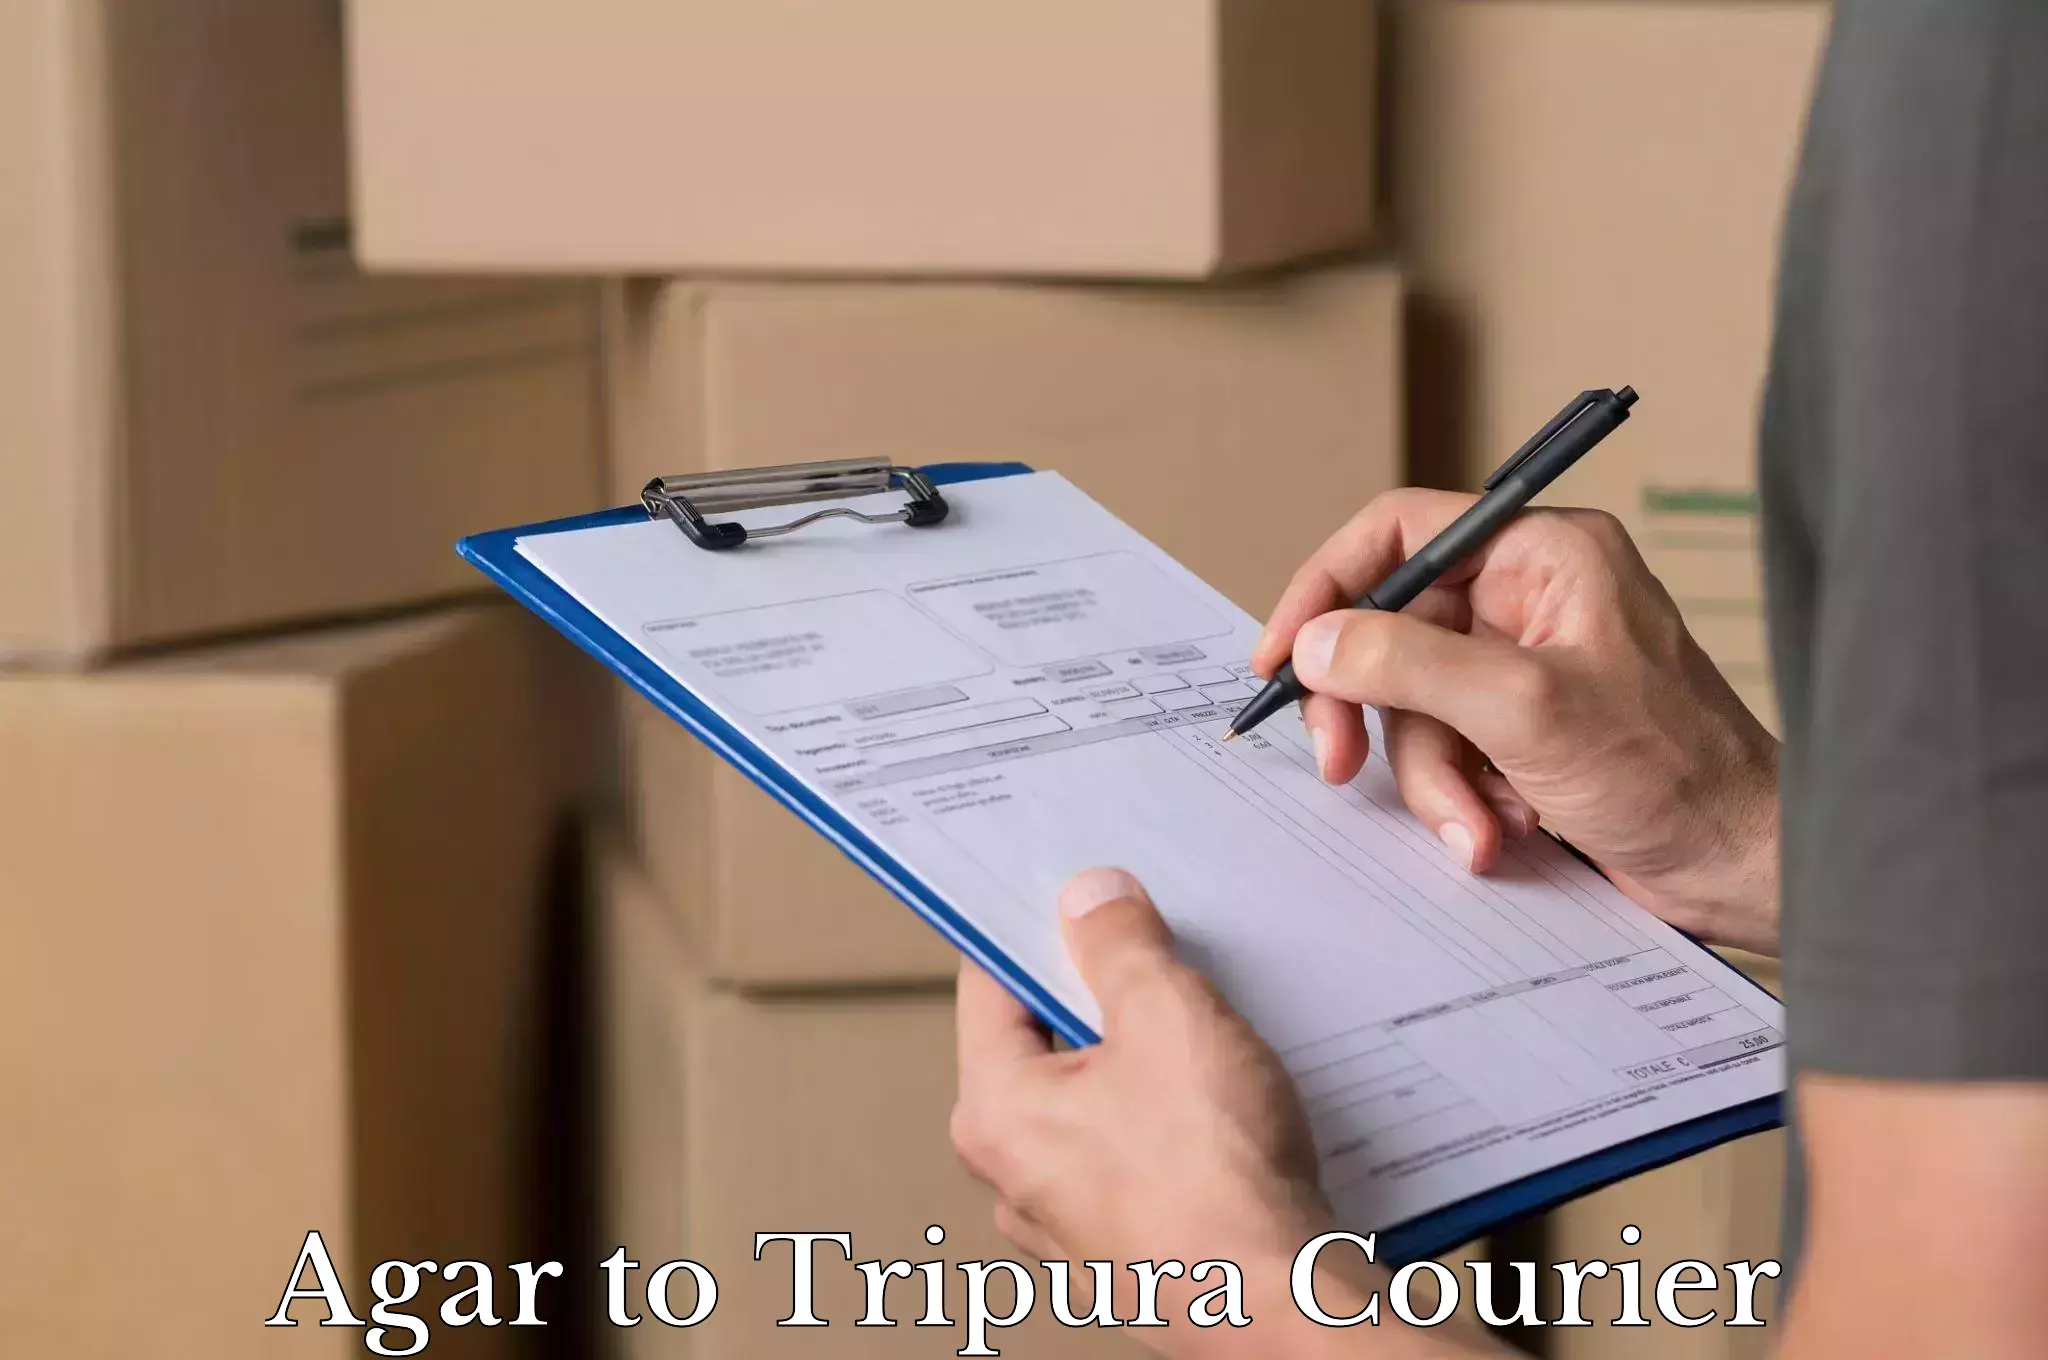 Baggage transport scheduler Agar to Tripura